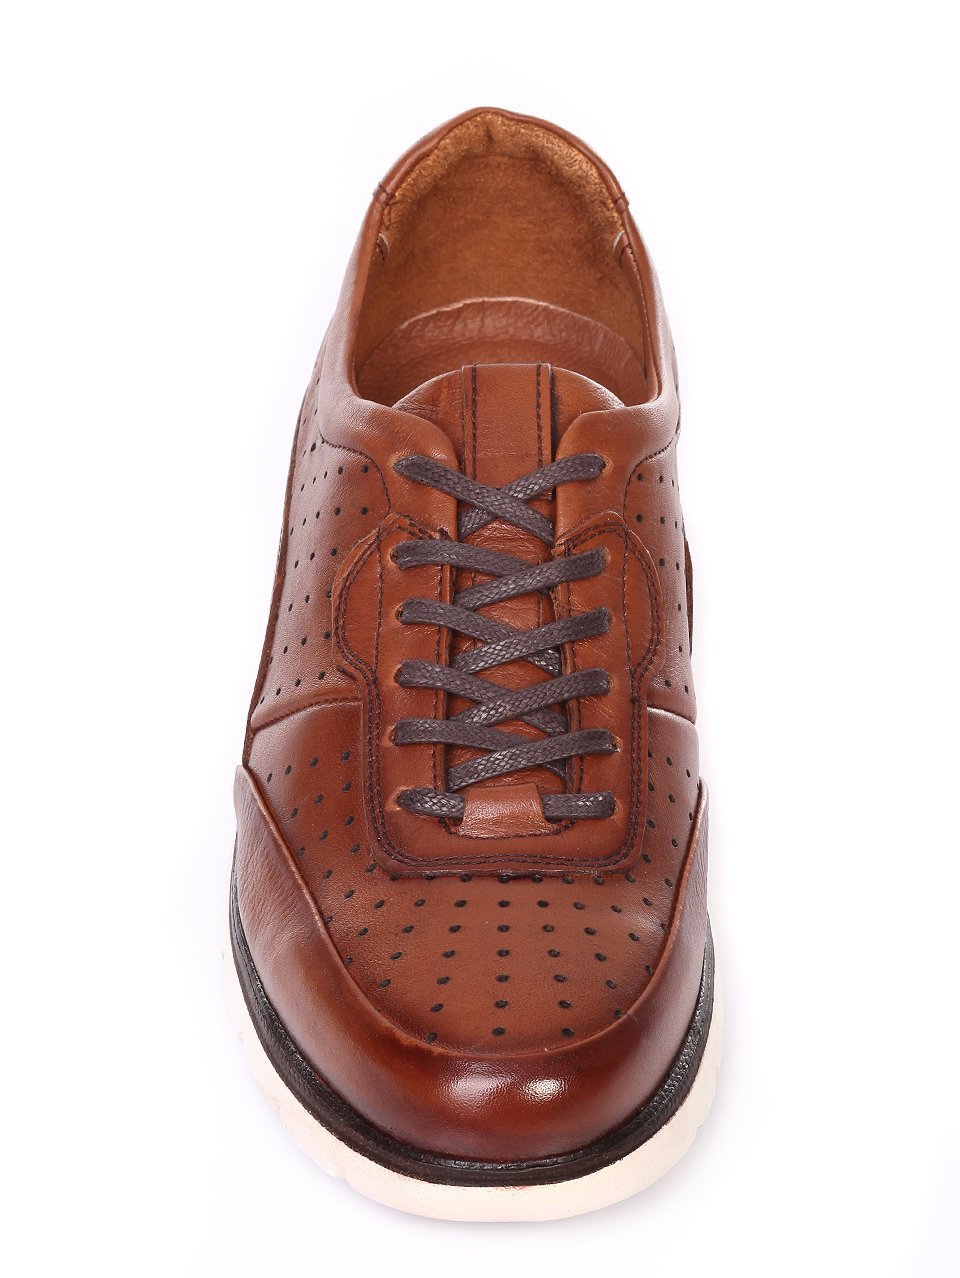 Ежедневни мъжки обувки от естествена кожа в кафяво 7AT-18582 brown